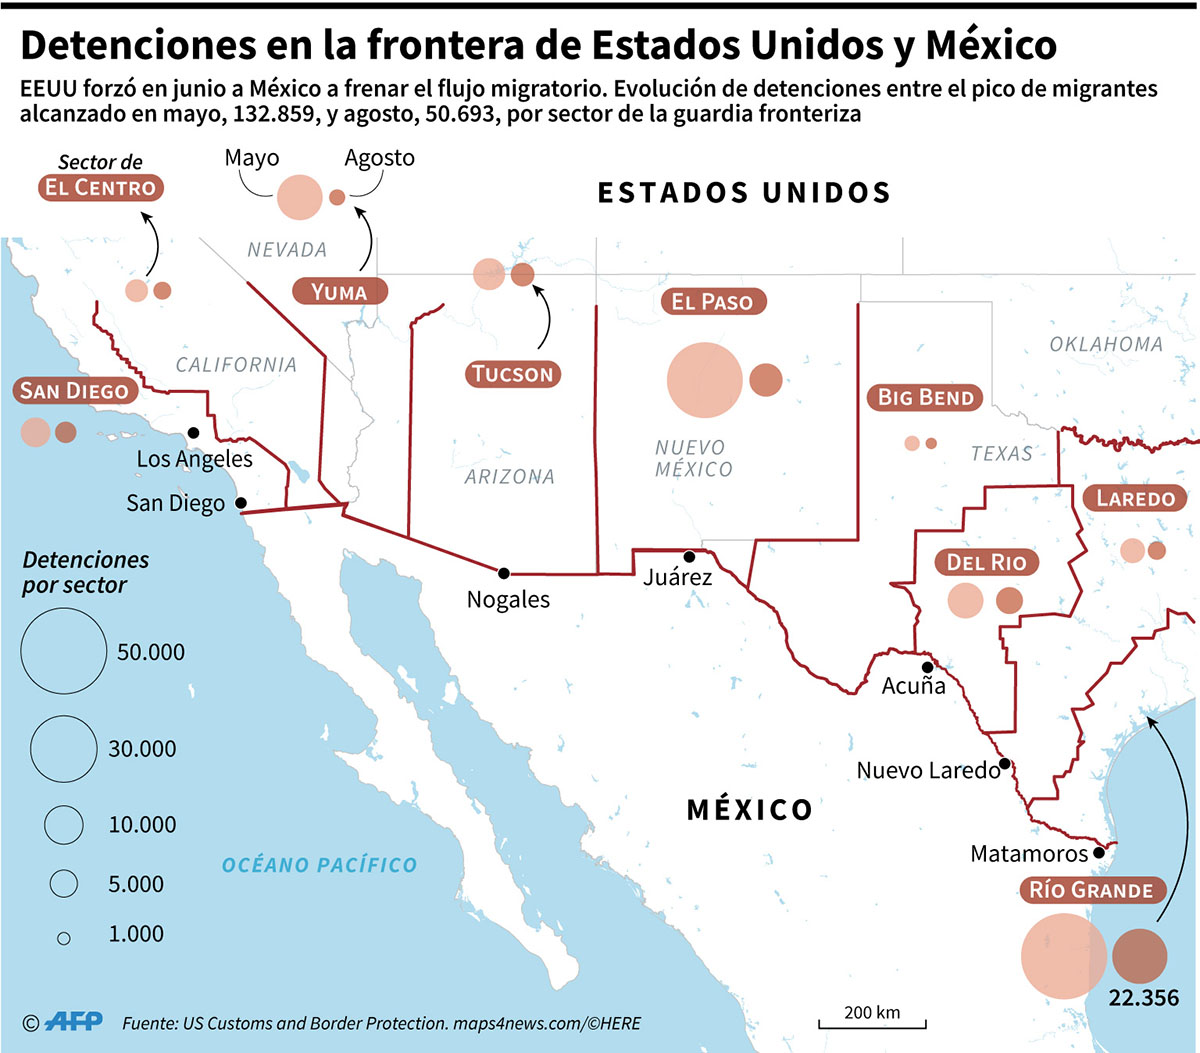 Las detenciones en la frontera con México en el suroeste de Estados Unidos cayeron entre mayo y agosto, luego del acuerdo de junio para que el país latinoamericano frene el flujo de migrantes. (Infografía: AFP)